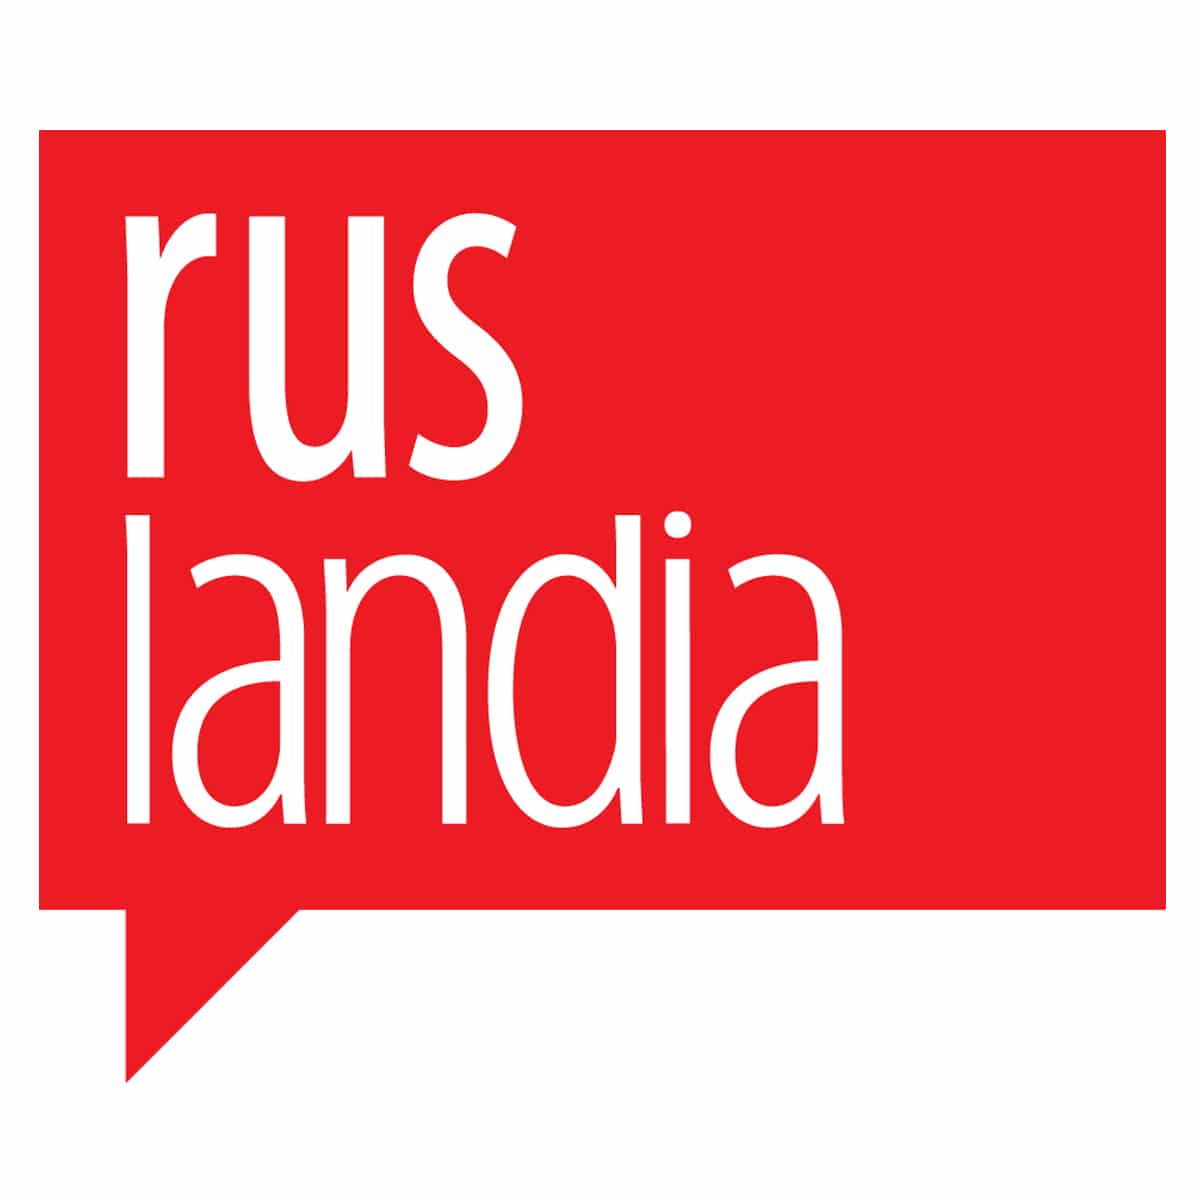 Ruslandia logo